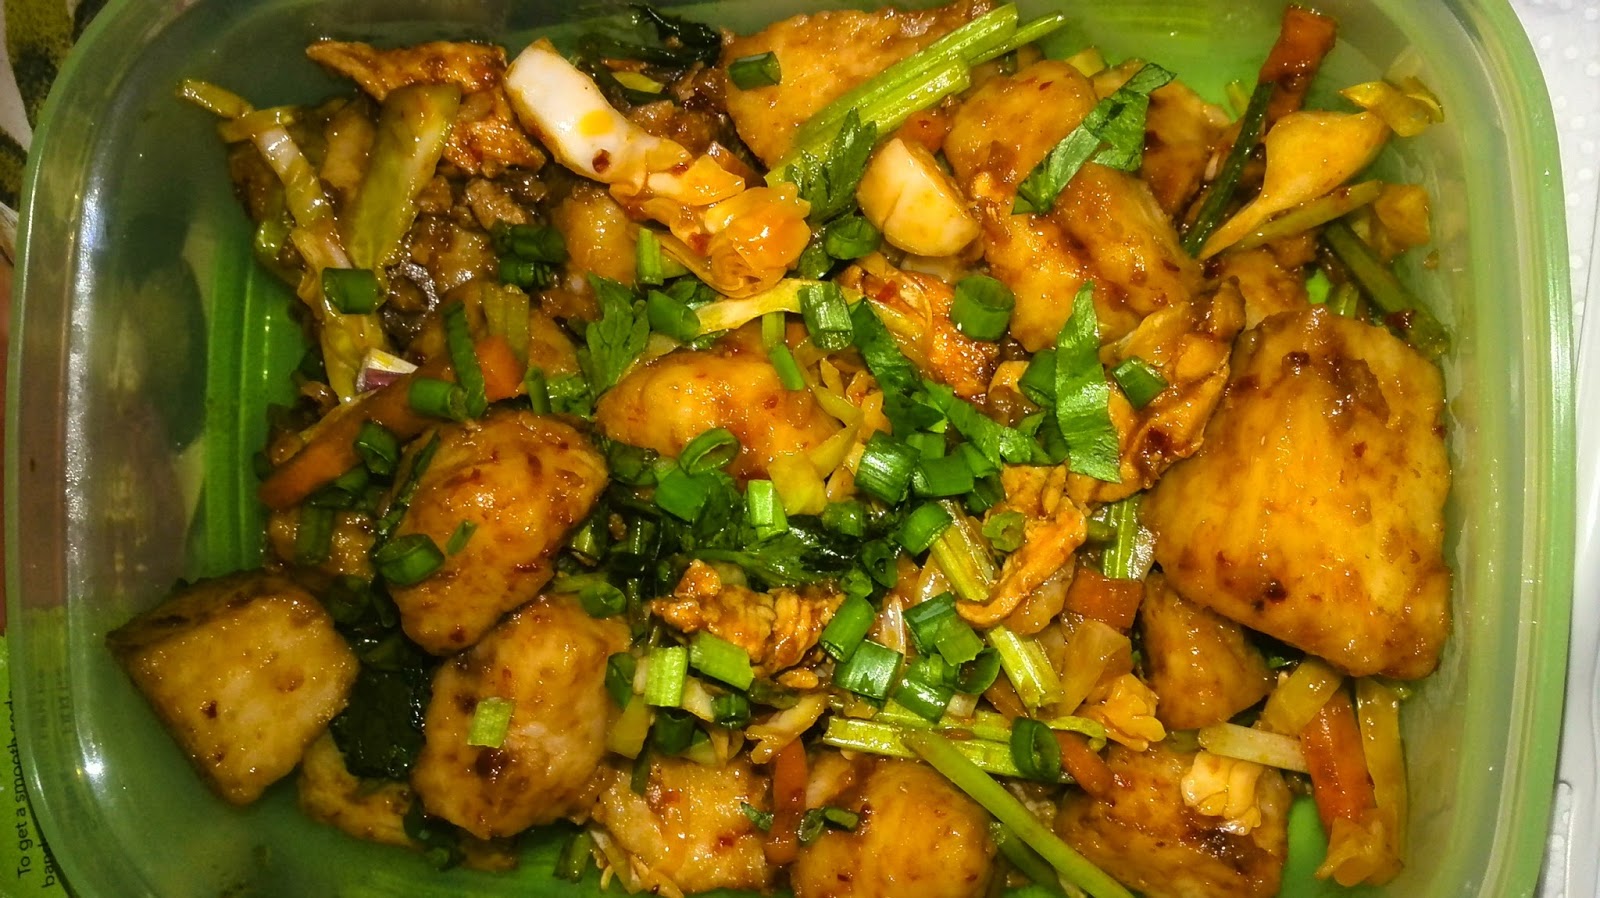 Resepi nasi impit goreng azie kitchen